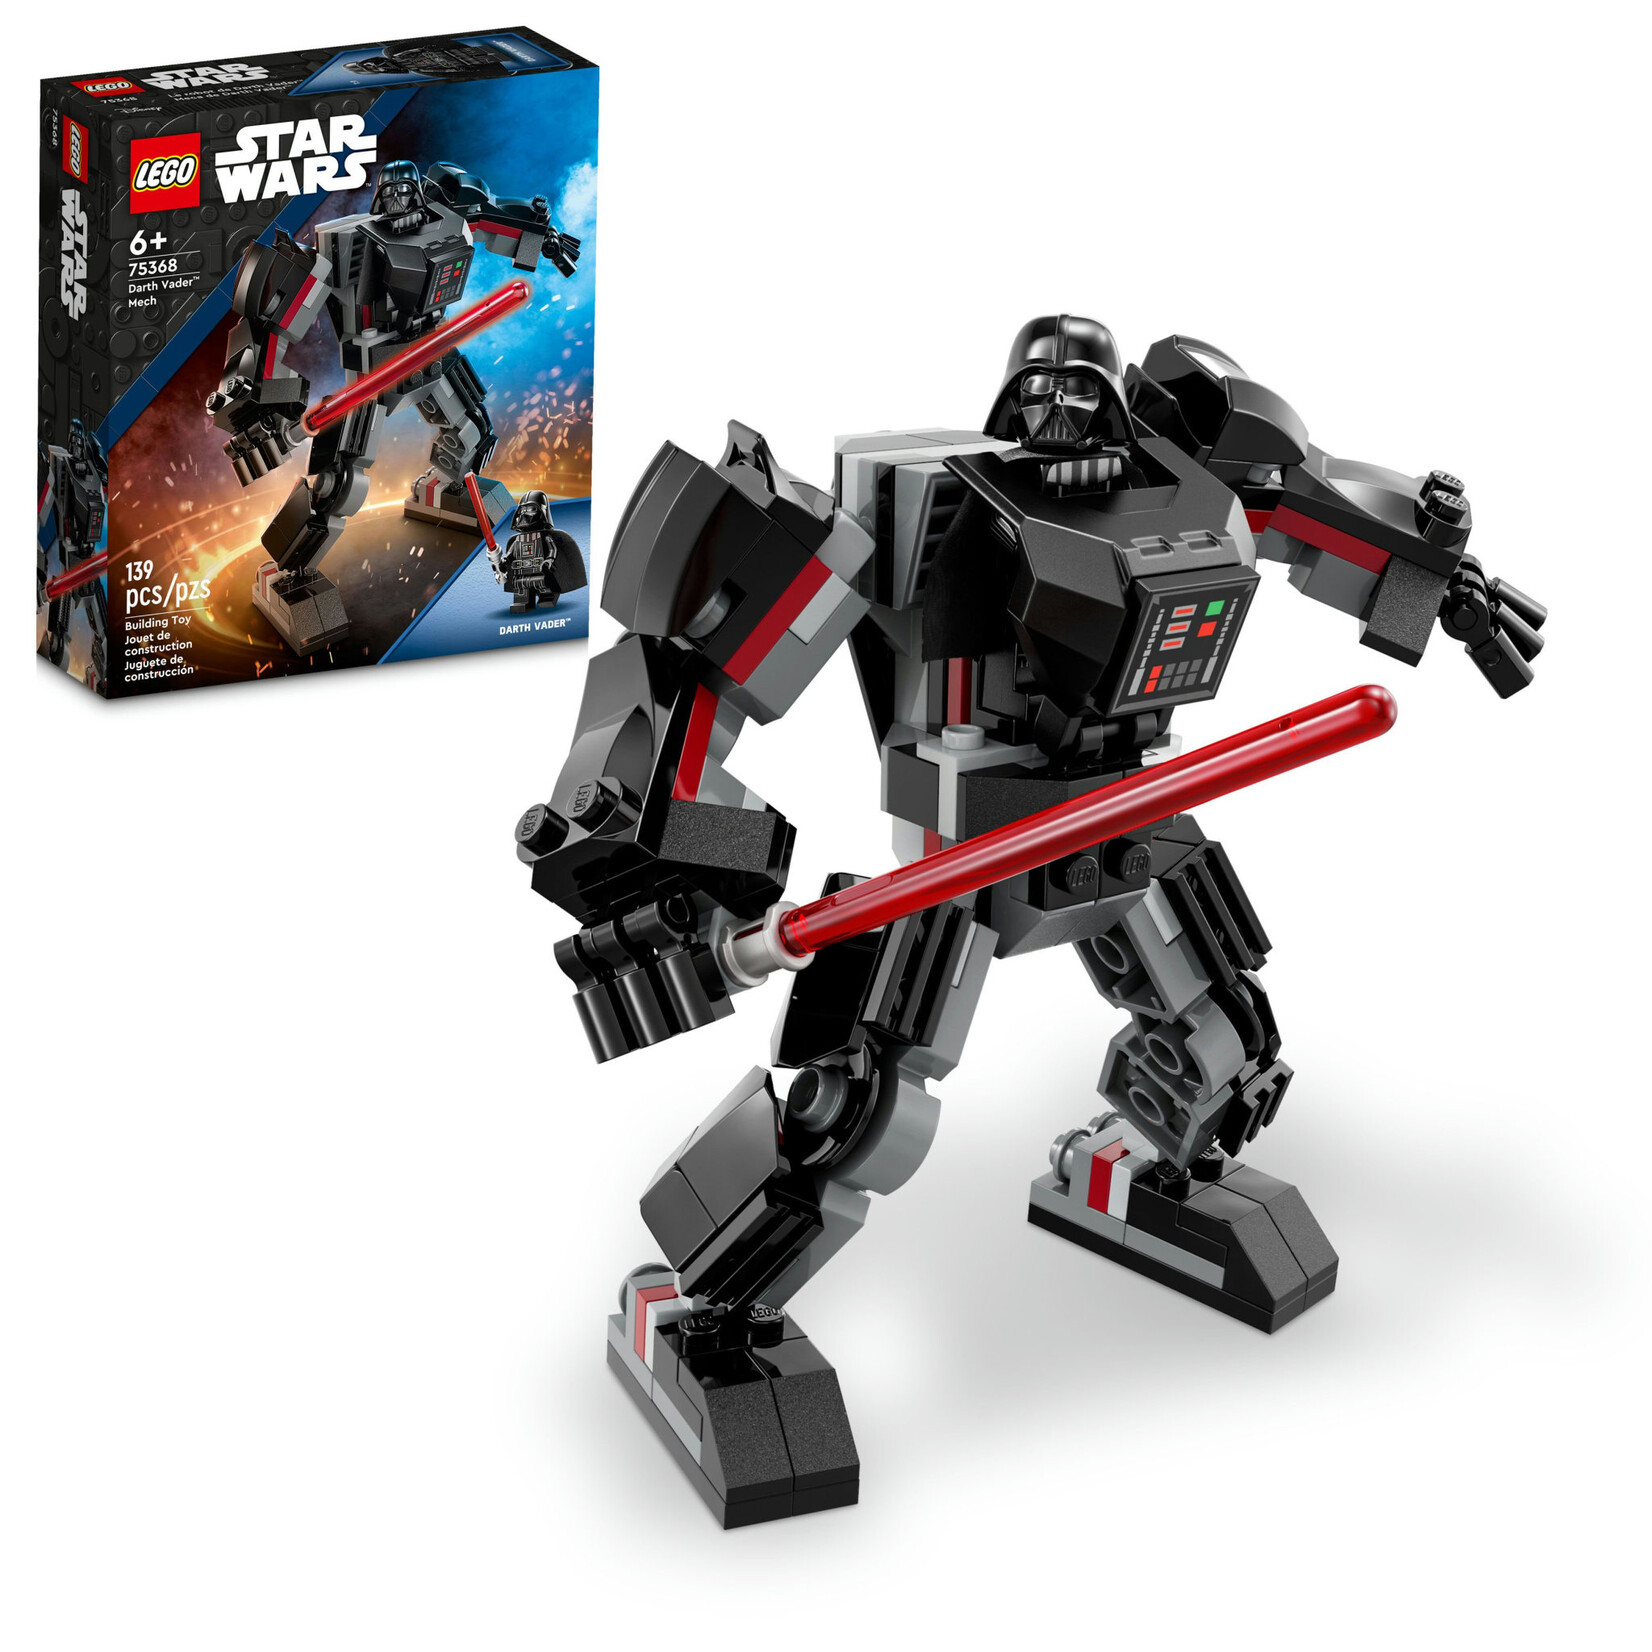 LEGO 75368 LEGO® Star Wars™ Darth Vader™ Mech